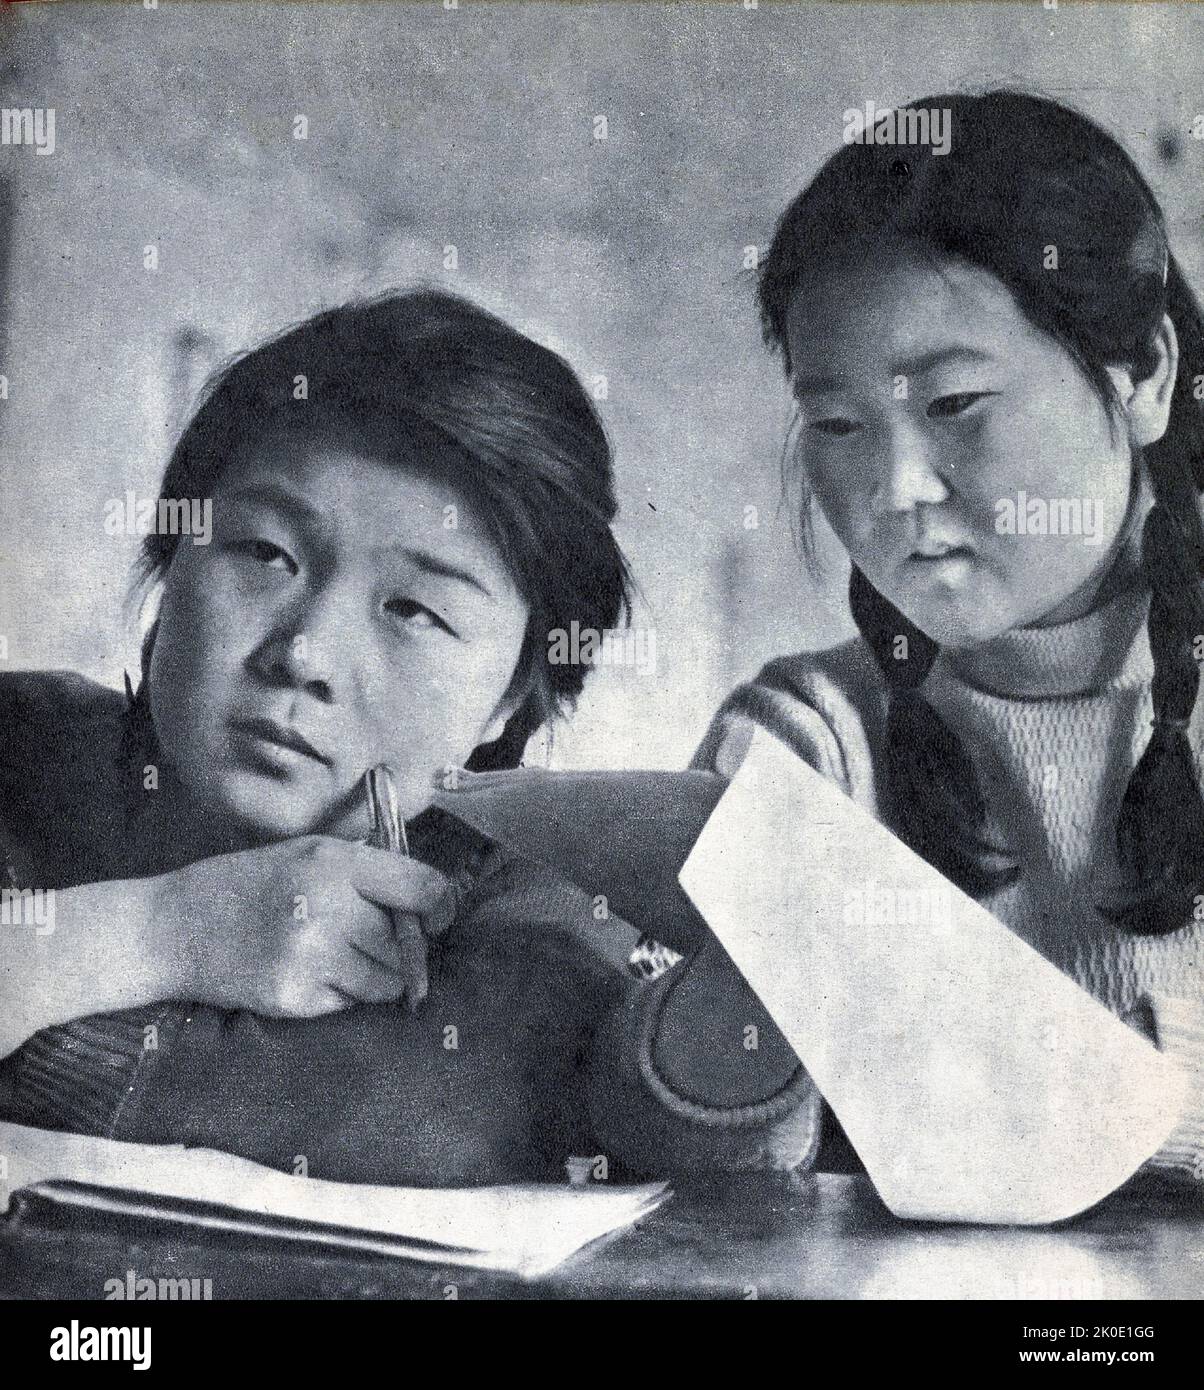 Propaganda nordcoreana fotografie di studenti universitari che imparano a beneficio dello stato, e di un lavoratore industriale soddisfatto di fare duro lavoro a beneficio dello stato, 1964. Foto Stock